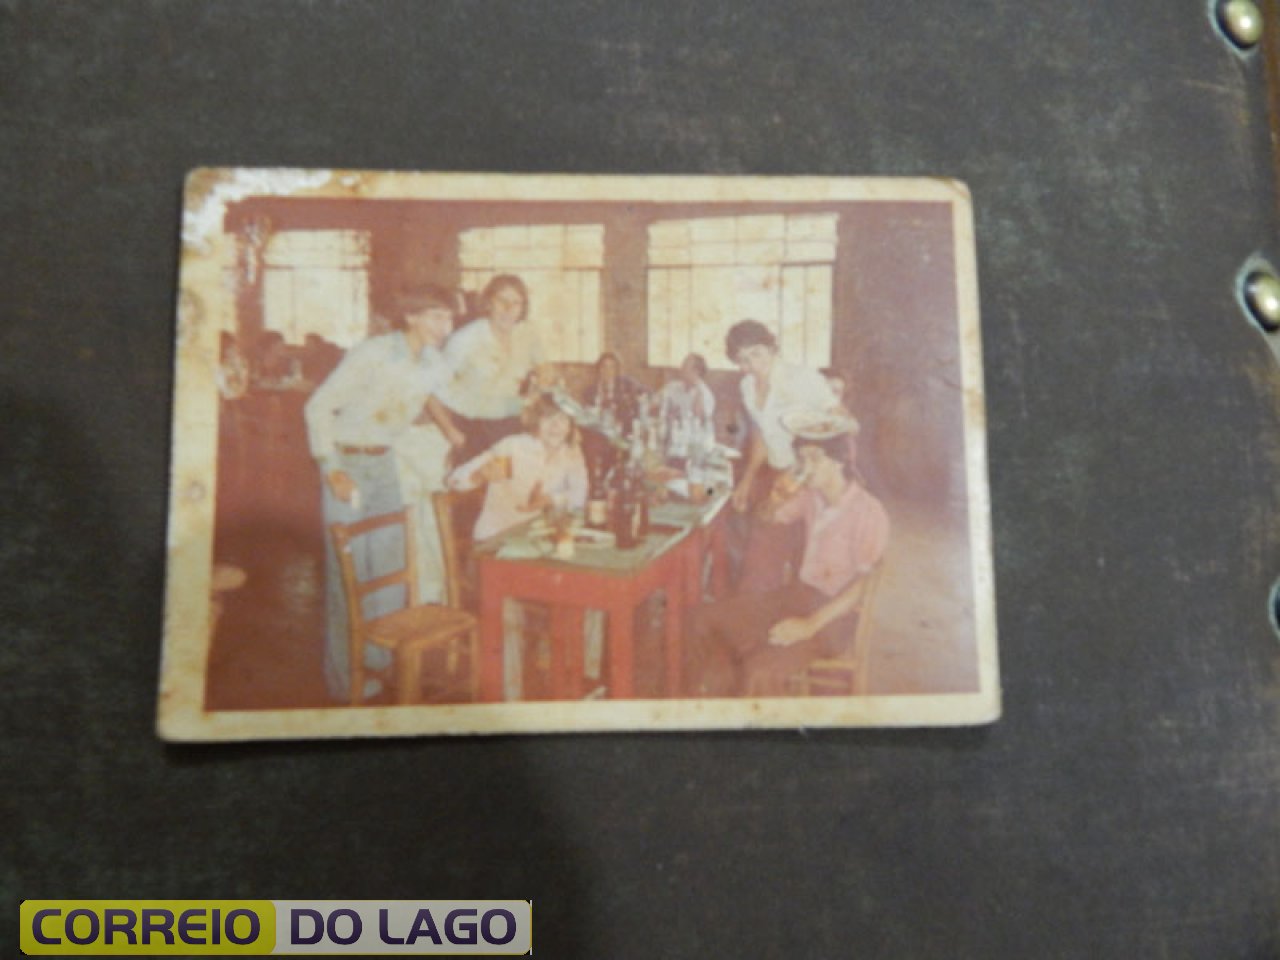 Festa de casamento de Luis C. Kozerski e Noeli Bonfanti. Local Clube União. José C. da Silva é o de camisa vermelha saboreando uma cerveja  e José A. Kozerski de calça azul. Década de 1980.